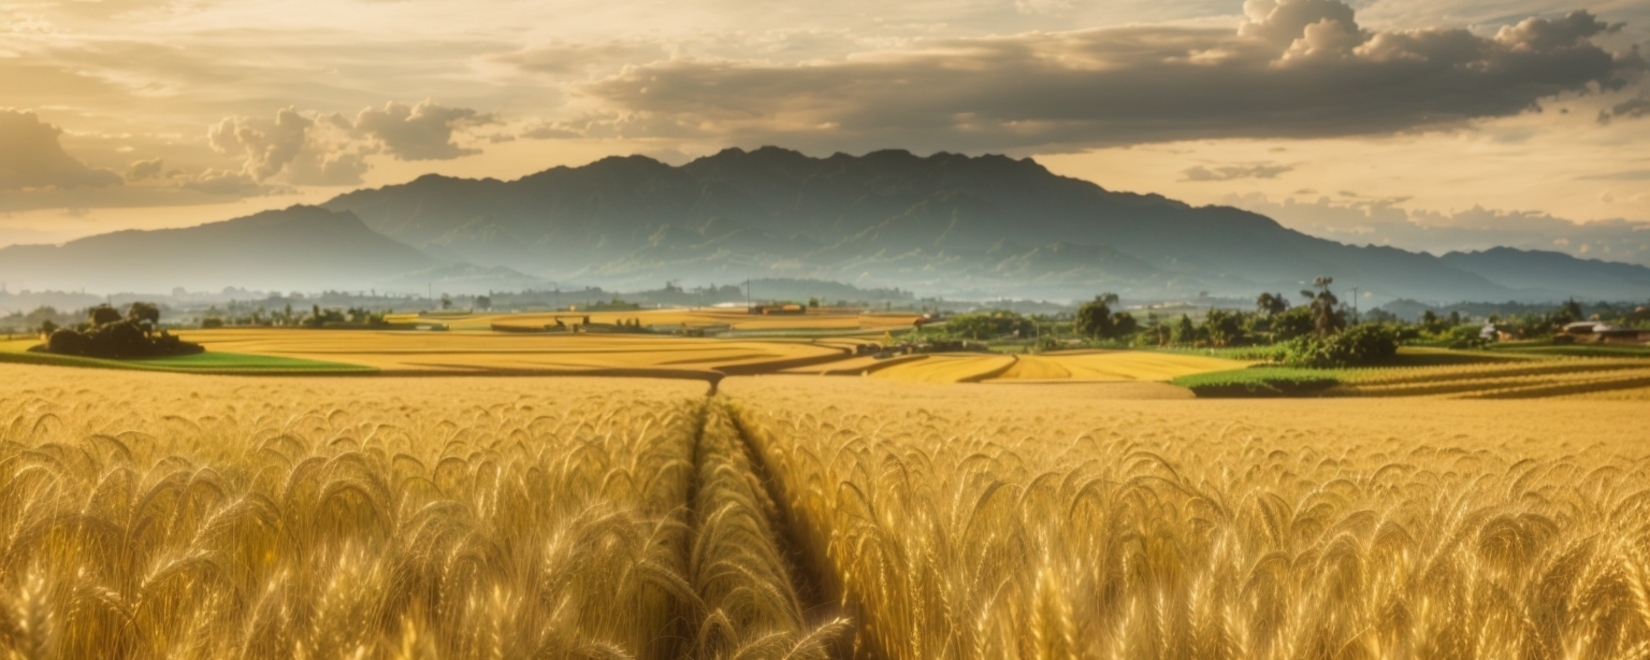 Тендер на покупку 30 тыс. руб. тонн пшеницы на Филиппинах